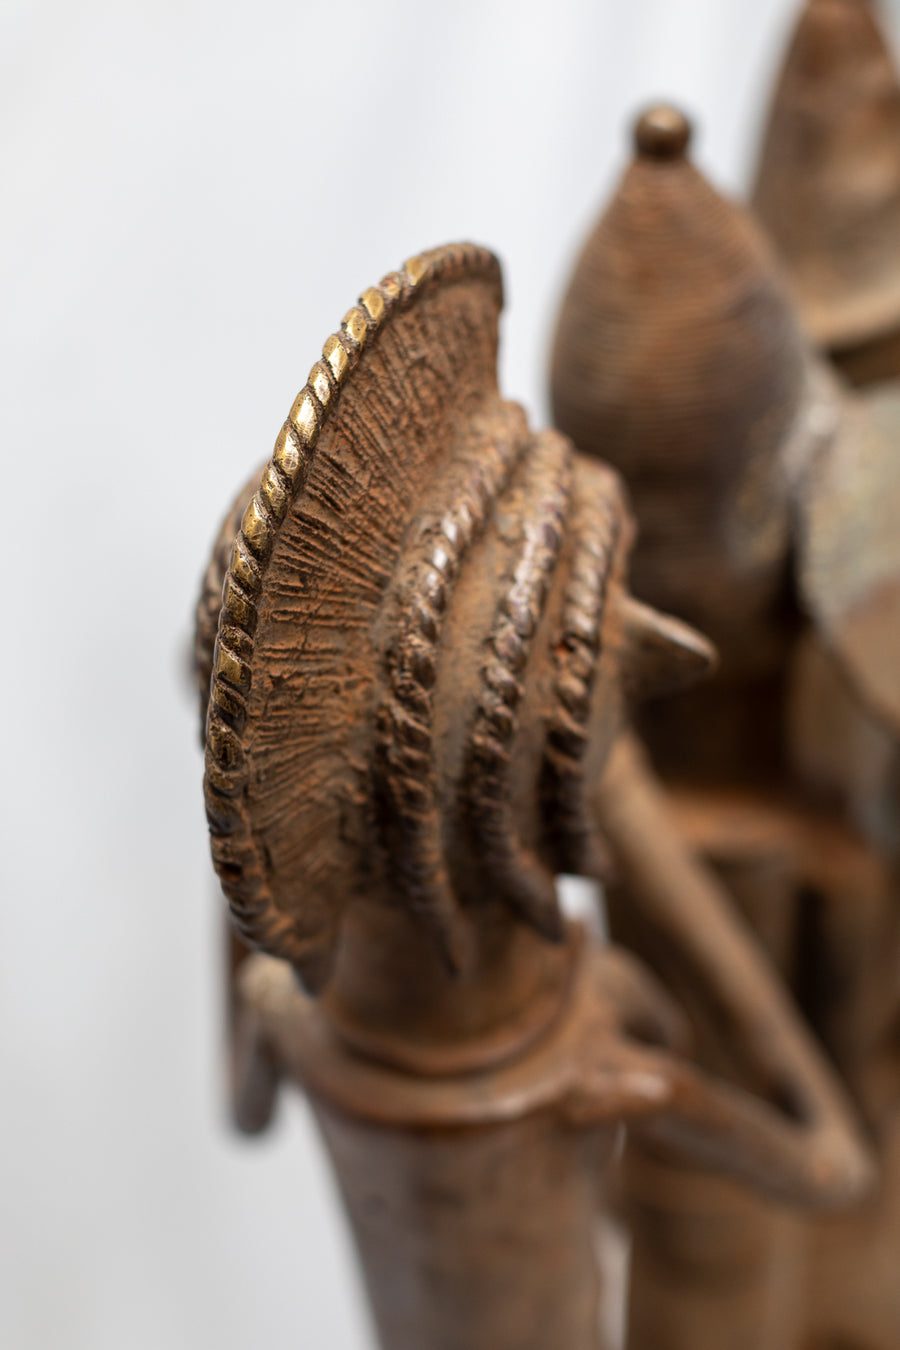 Caballo con 3 guerreros Maroua - País: Camerún  Material: Aleación de bronce  Medidas: 108X25X121cm